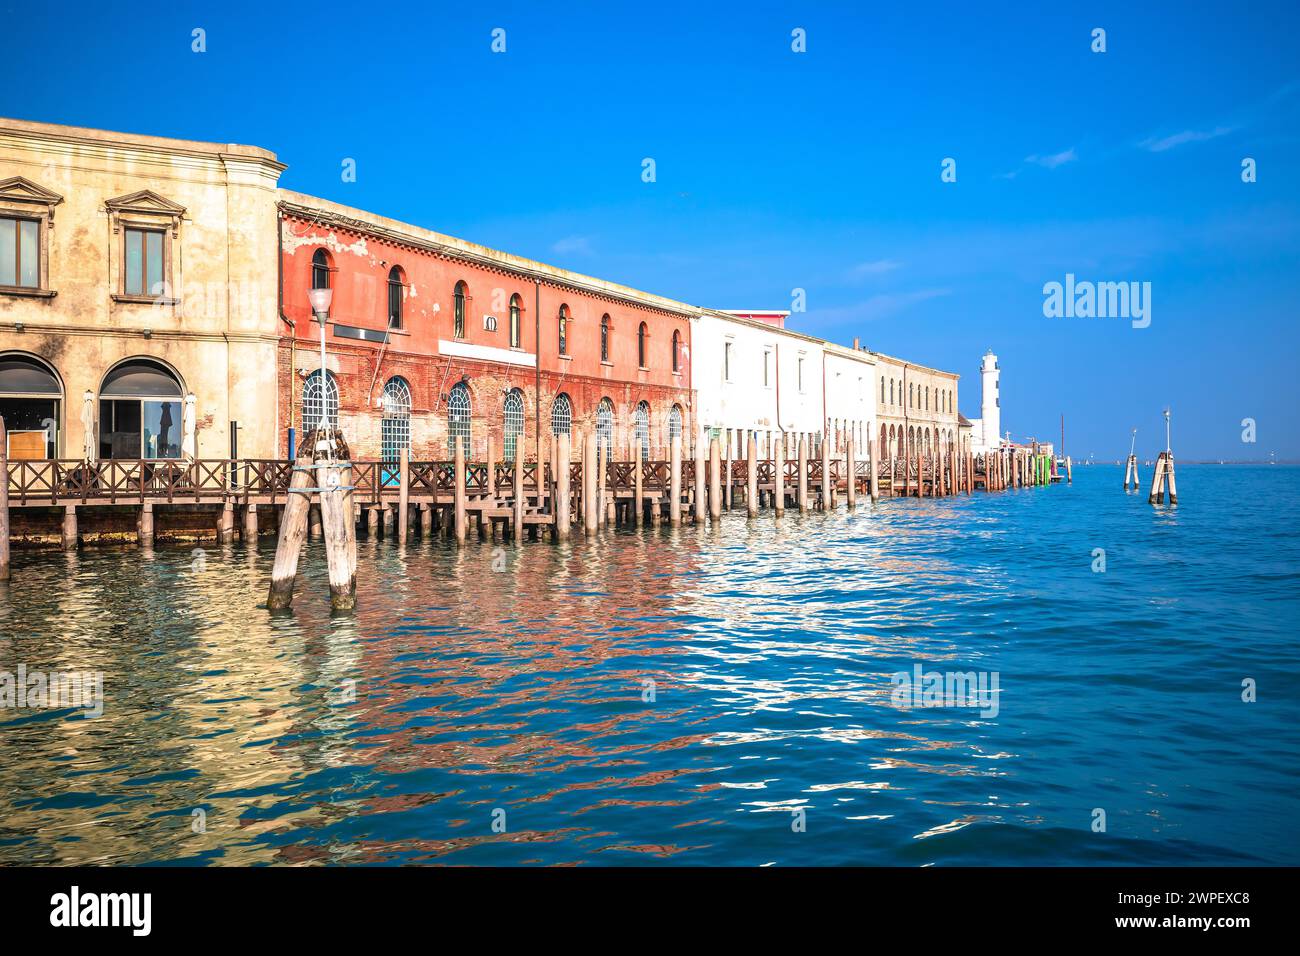 Vista sul lungomare di Murano e sul faro, sull'isola dell'arcipelago di Venezia, nell'Italia settentrionale Foto Stock